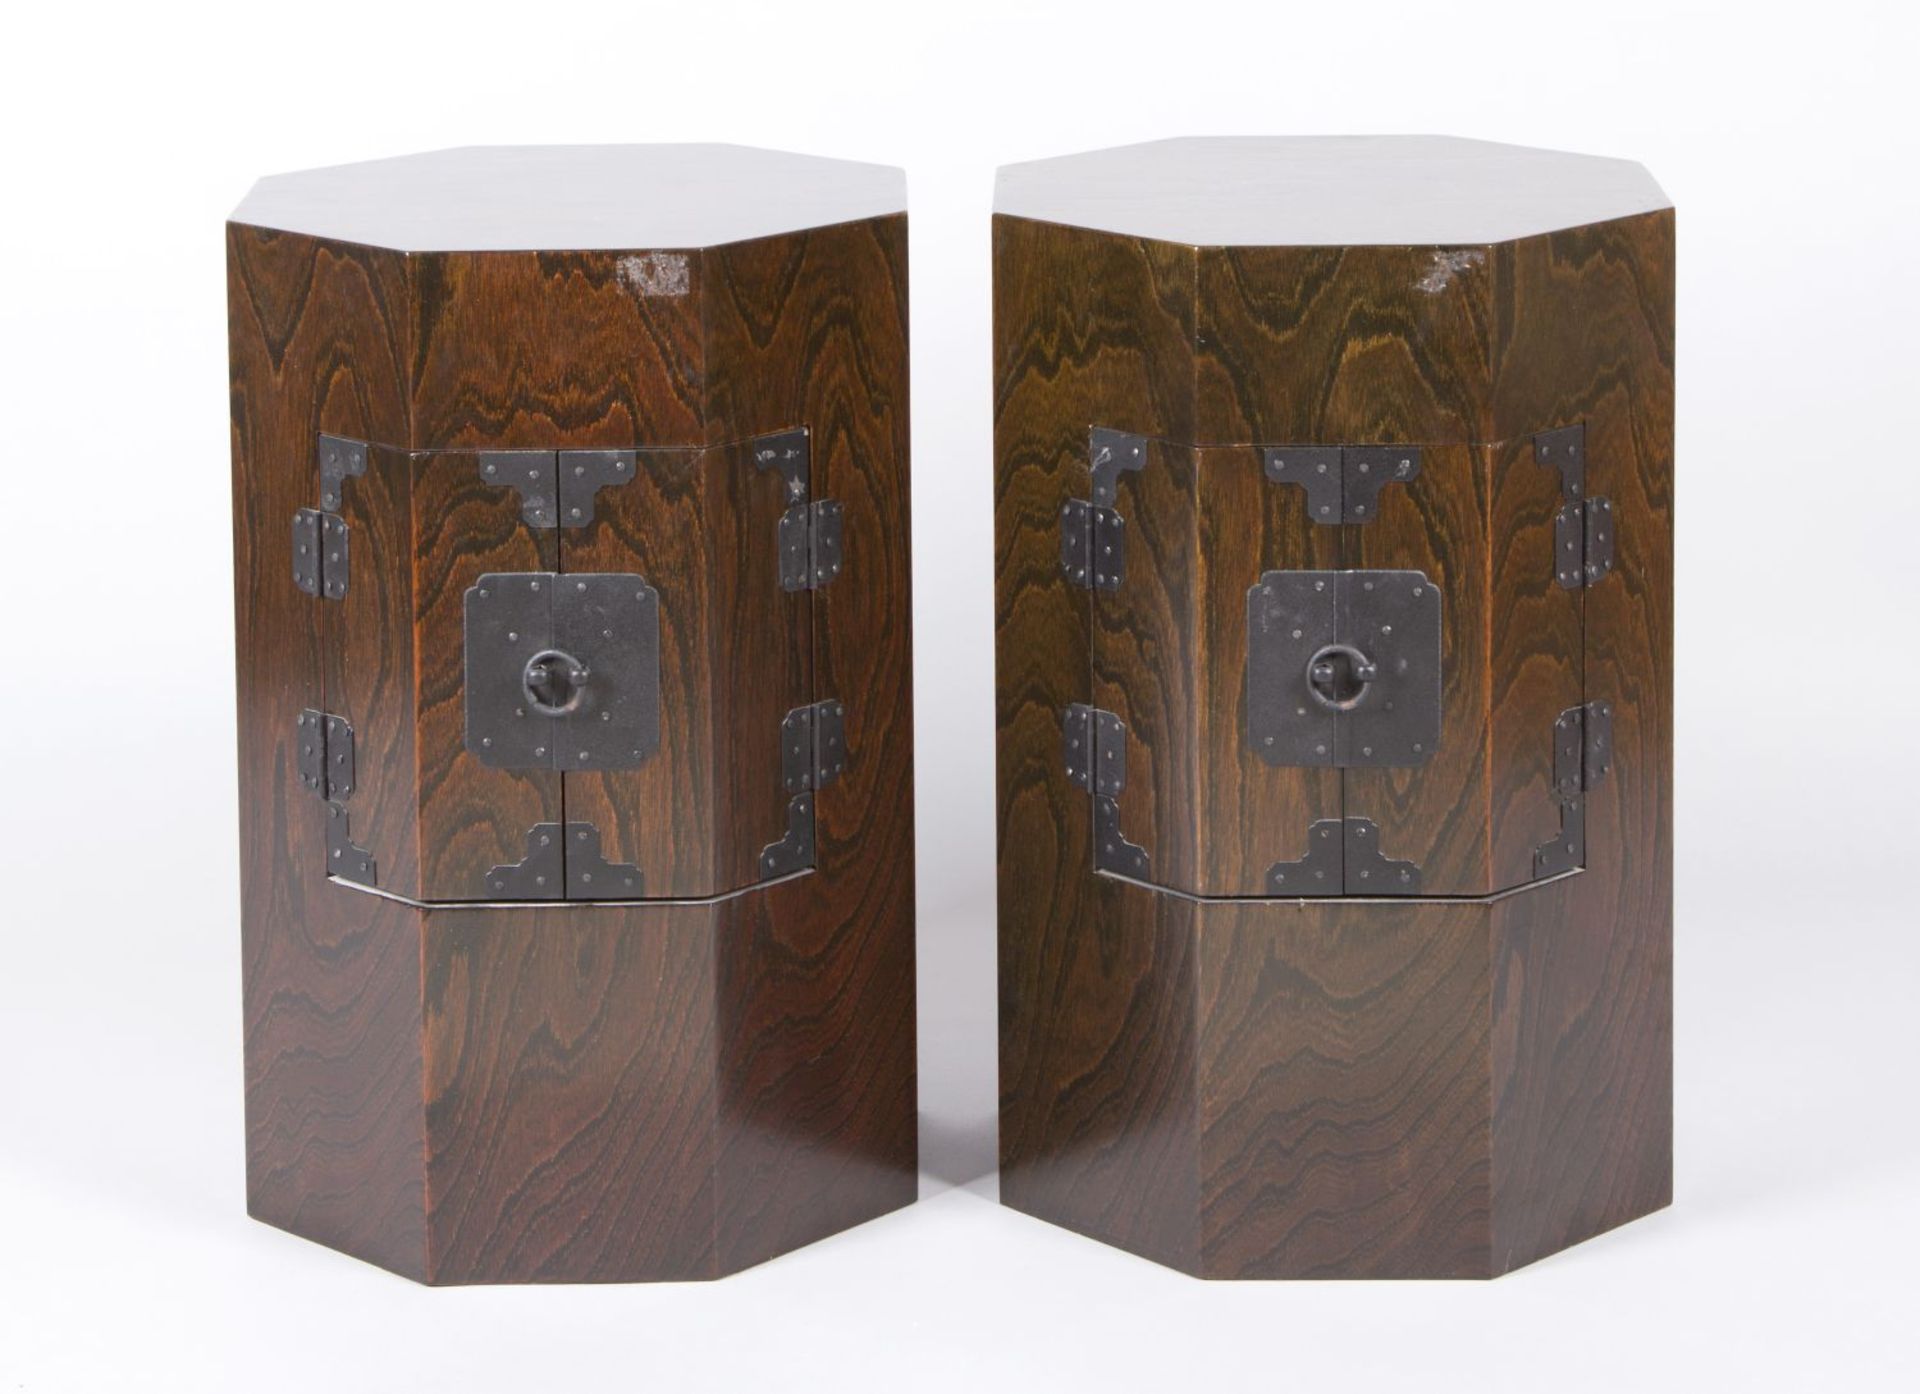 Ein Paar Kästchen Tropenholz. Brettkonstruktion auf Achteckgrundriss. Türe. China. 55 x 37 x 37 cm.